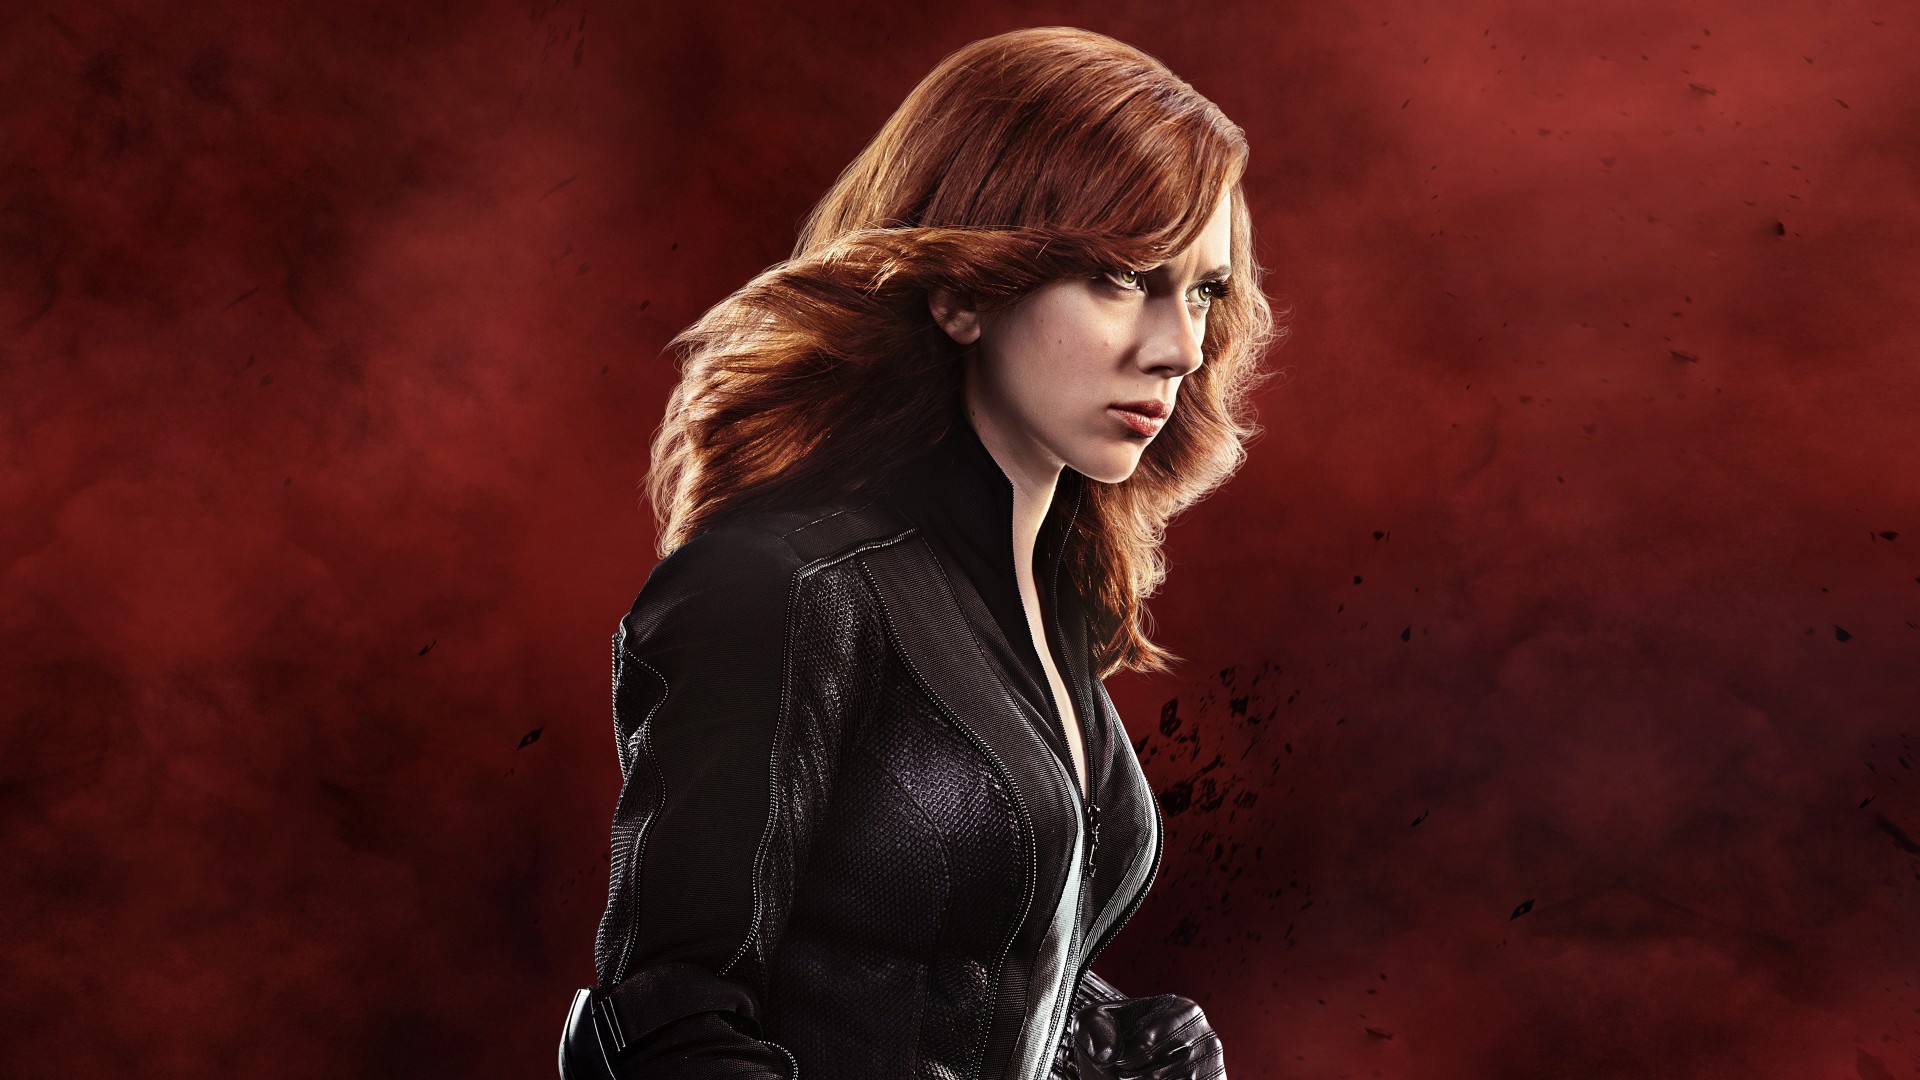 Scarlett Johansson As Black Widow In Captain America - Scarlett Johansson Black Widow Civil War - HD Wallpaper 